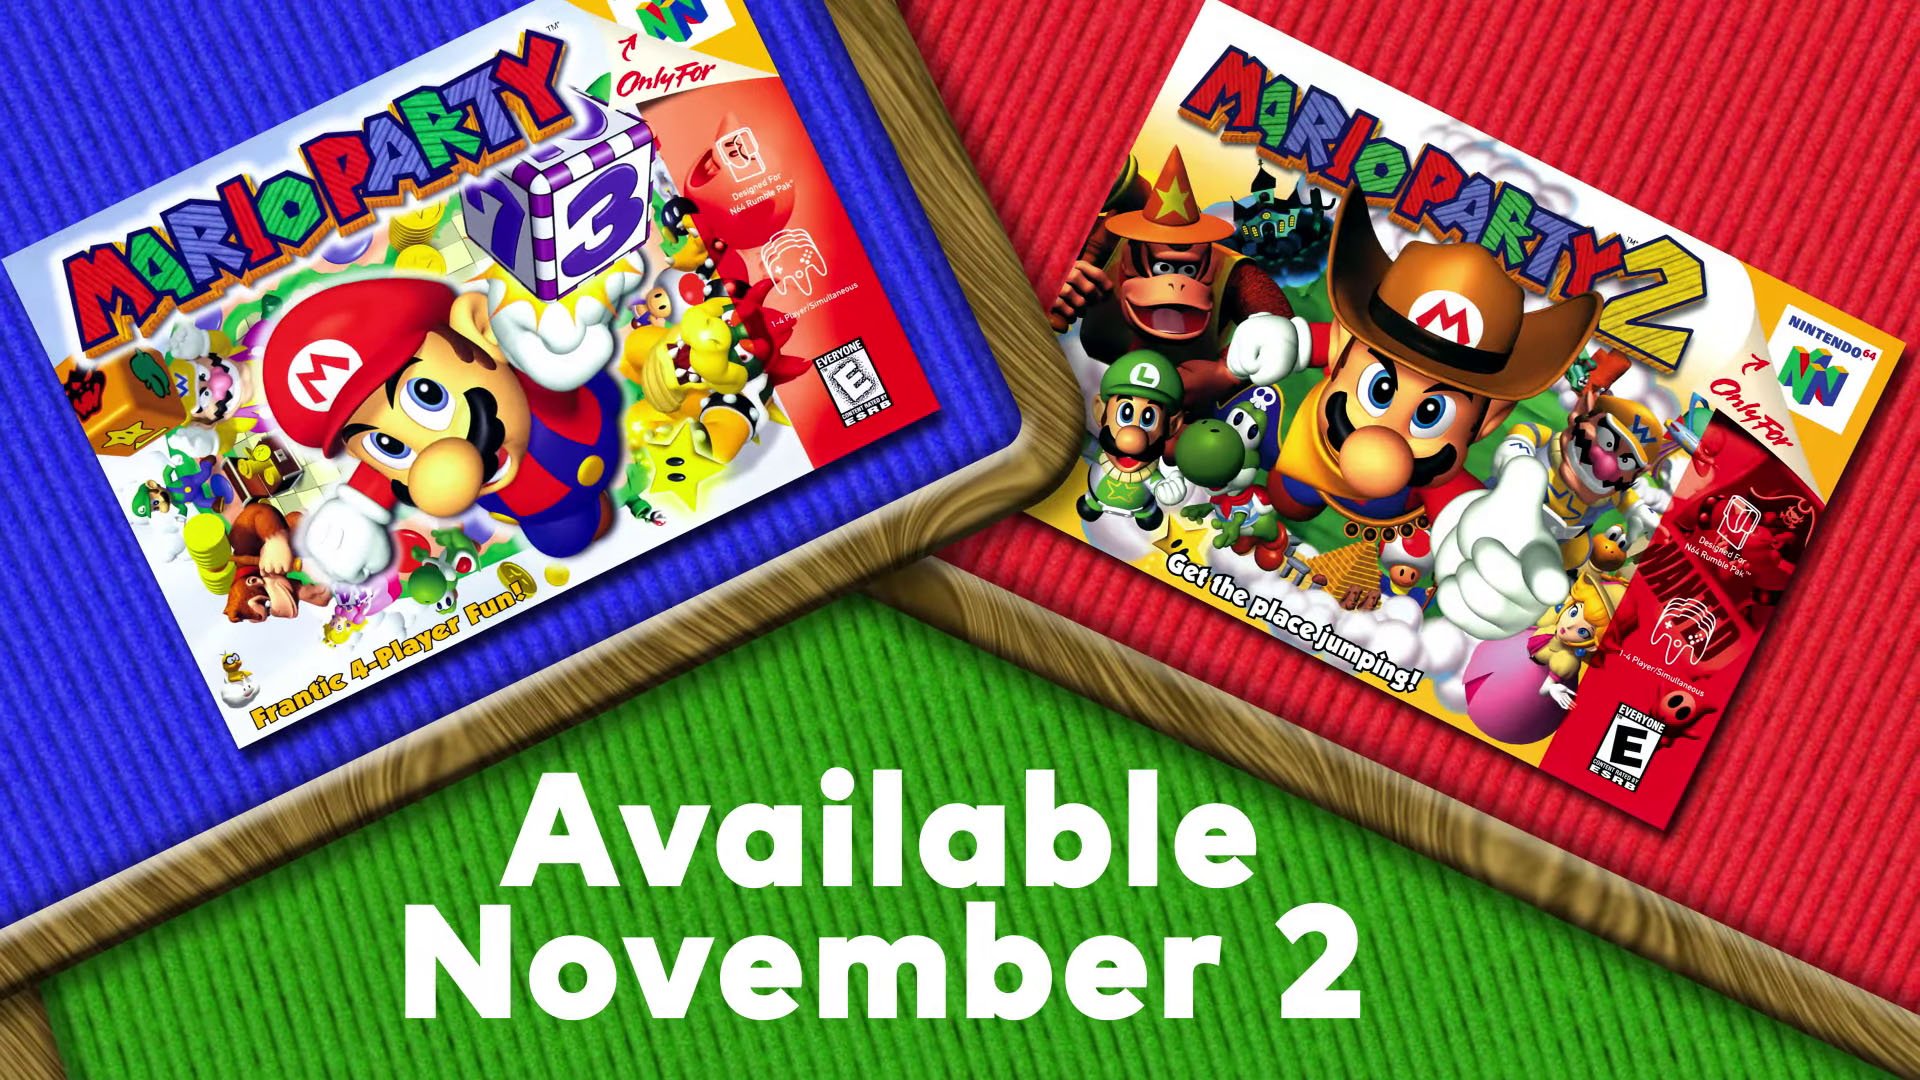 Mario Party 1, 2 e 3 são anunciados para o aplicativo Nintendo 64 -  Nintendo Switch Online; saiba mais